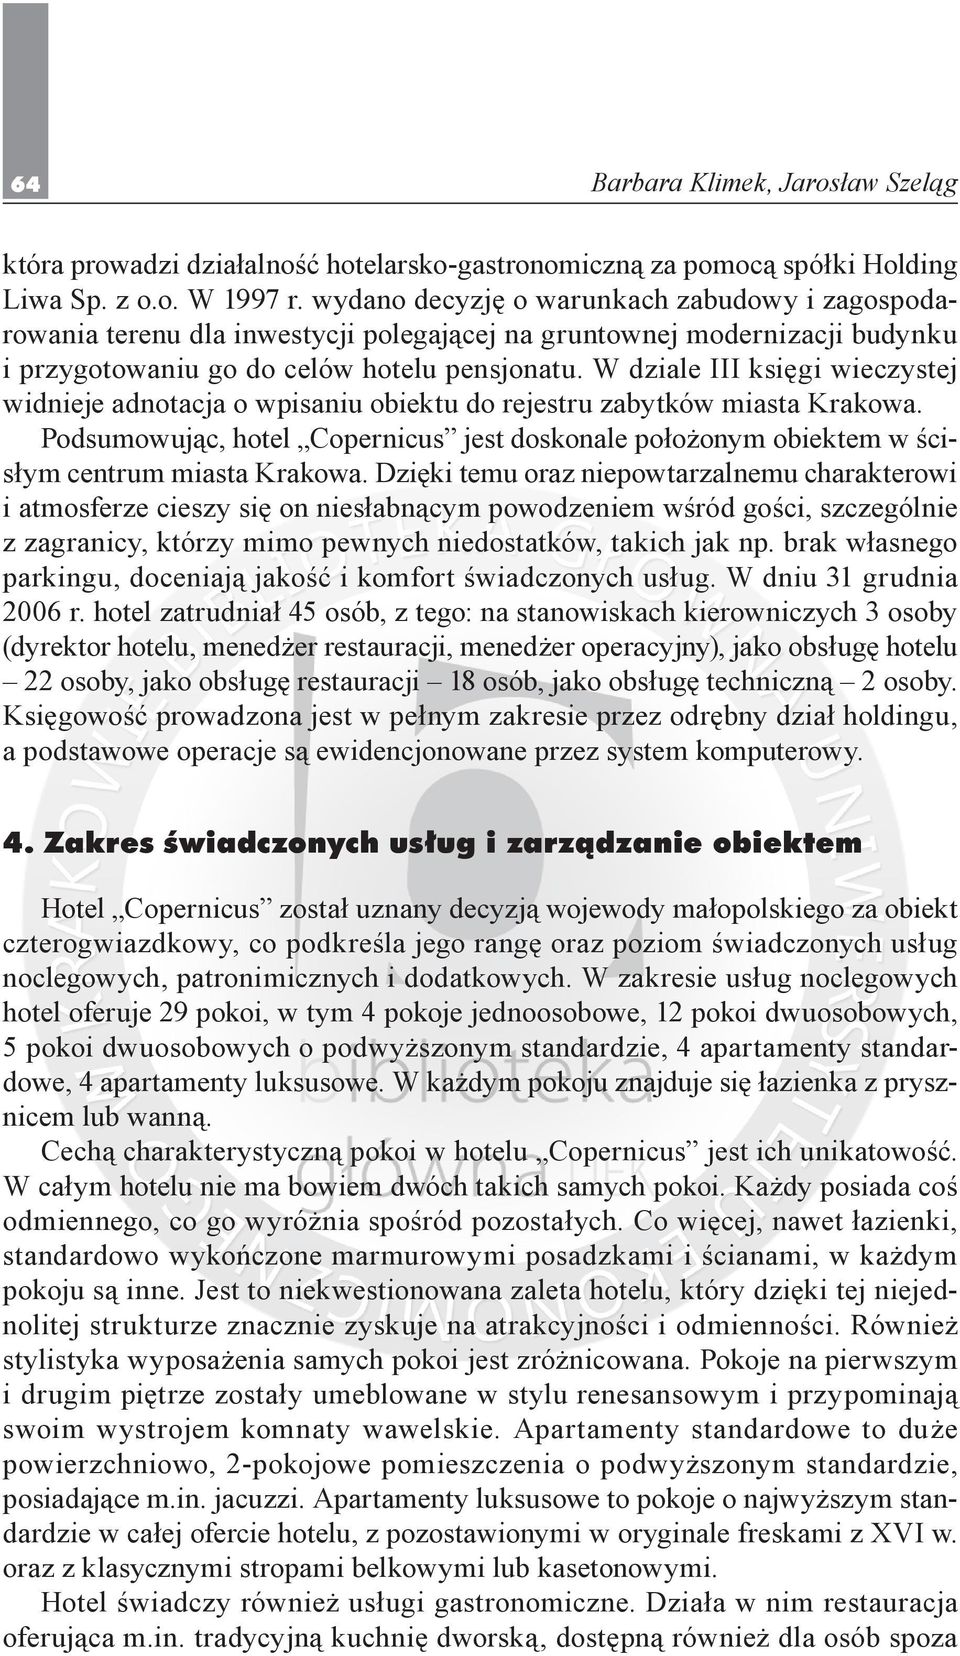 W dziale III księgi wieczystej widnieje adnotacja o wpisaniu obiektu do rejestru zabytków miasta Krakowa.